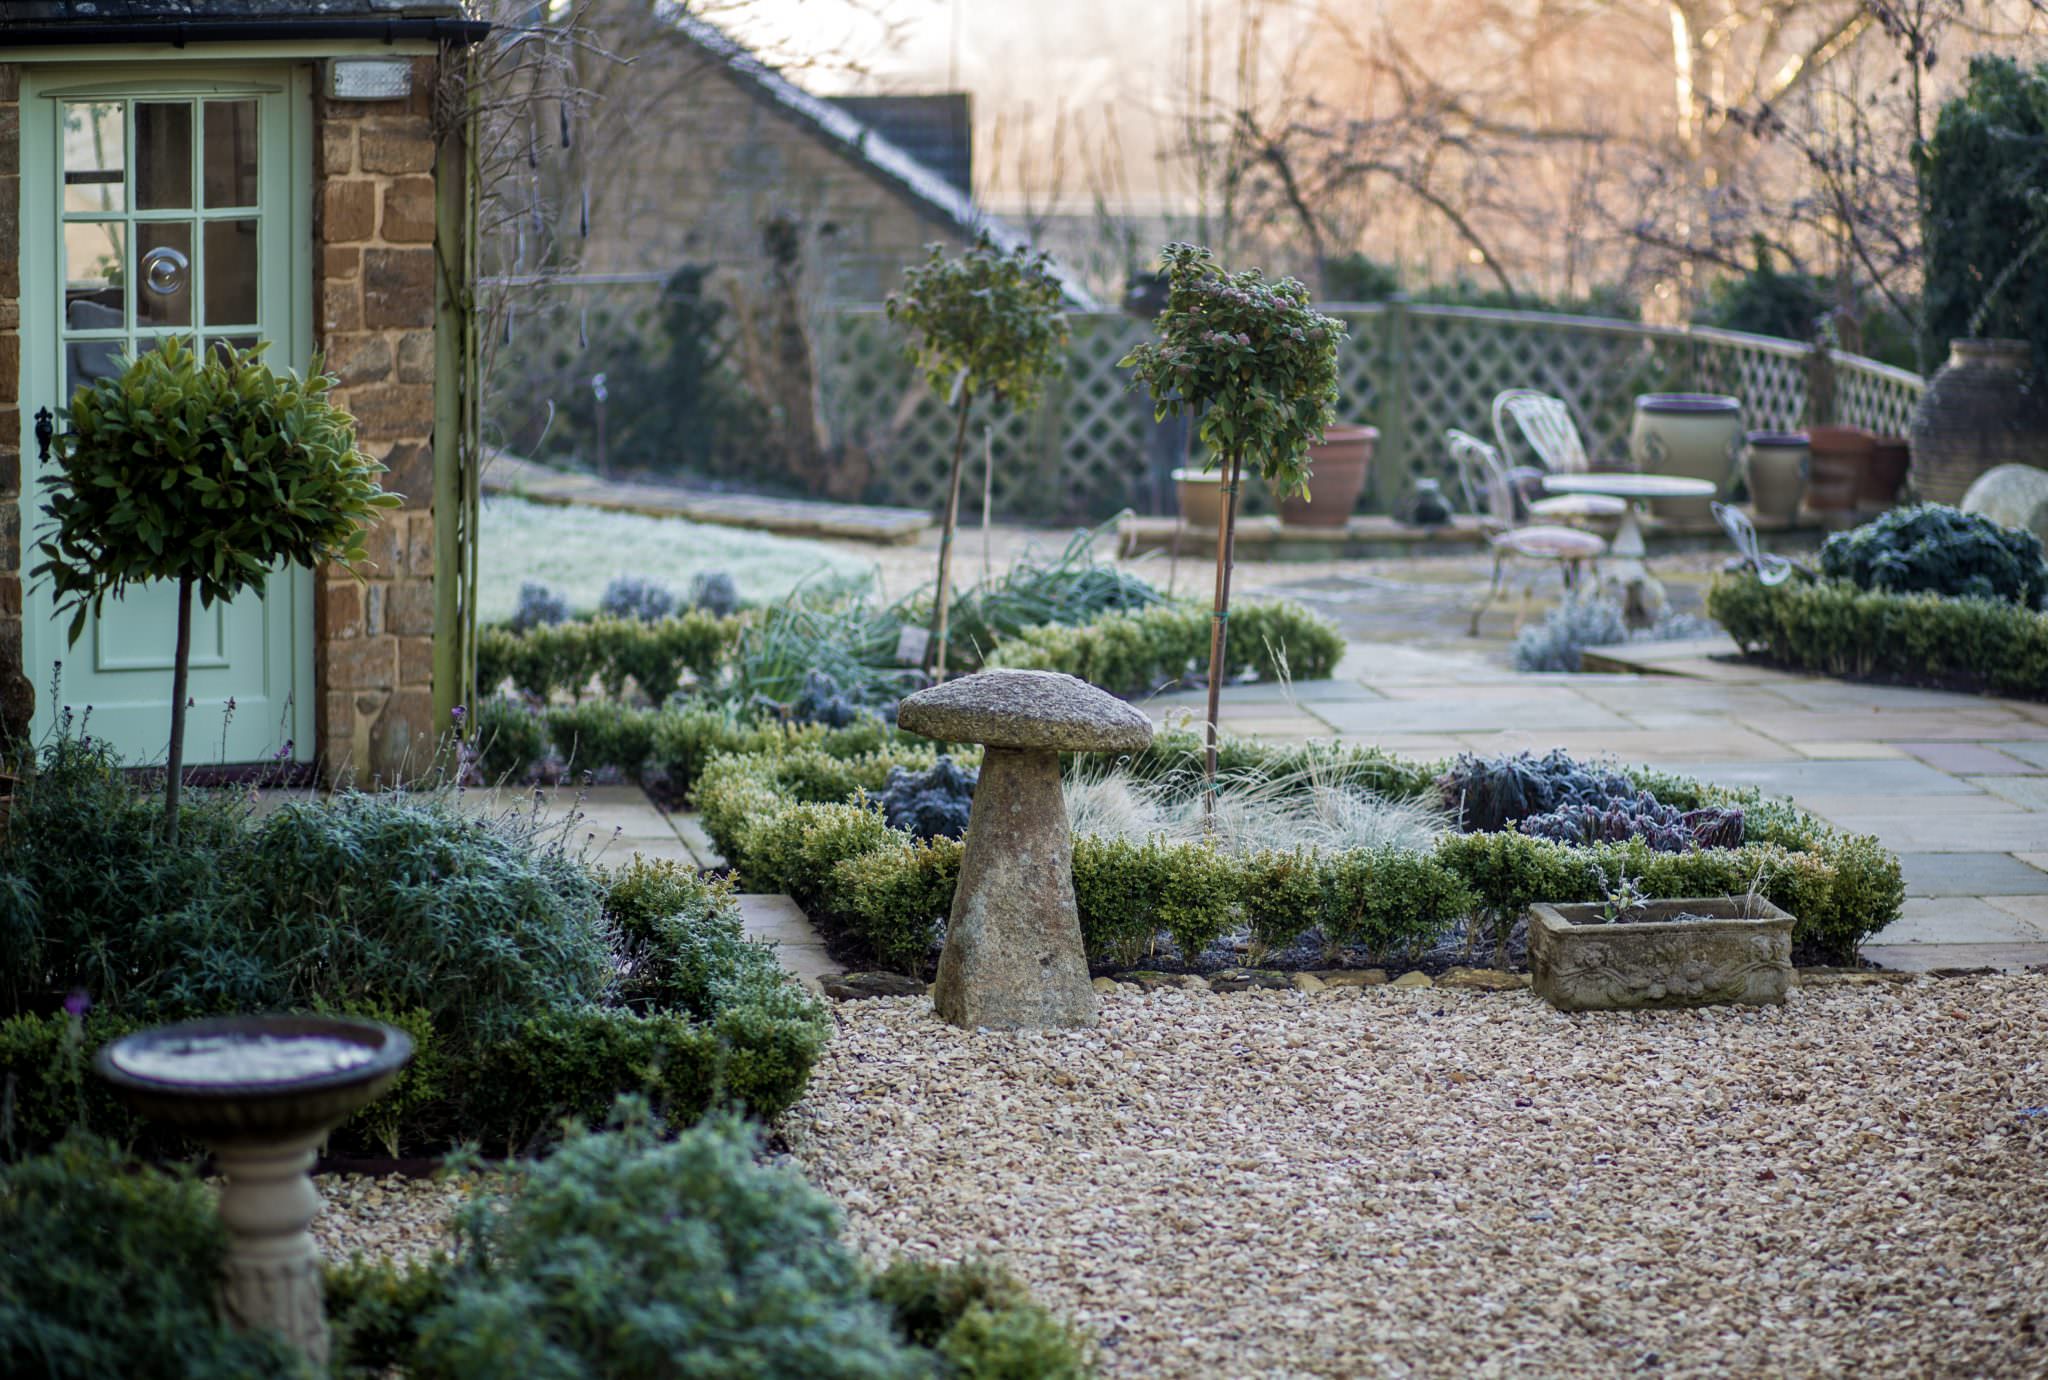 Ideas For Front Garden Design Oxford Garden Design - Garden Designs For Small Front Gardens Uk